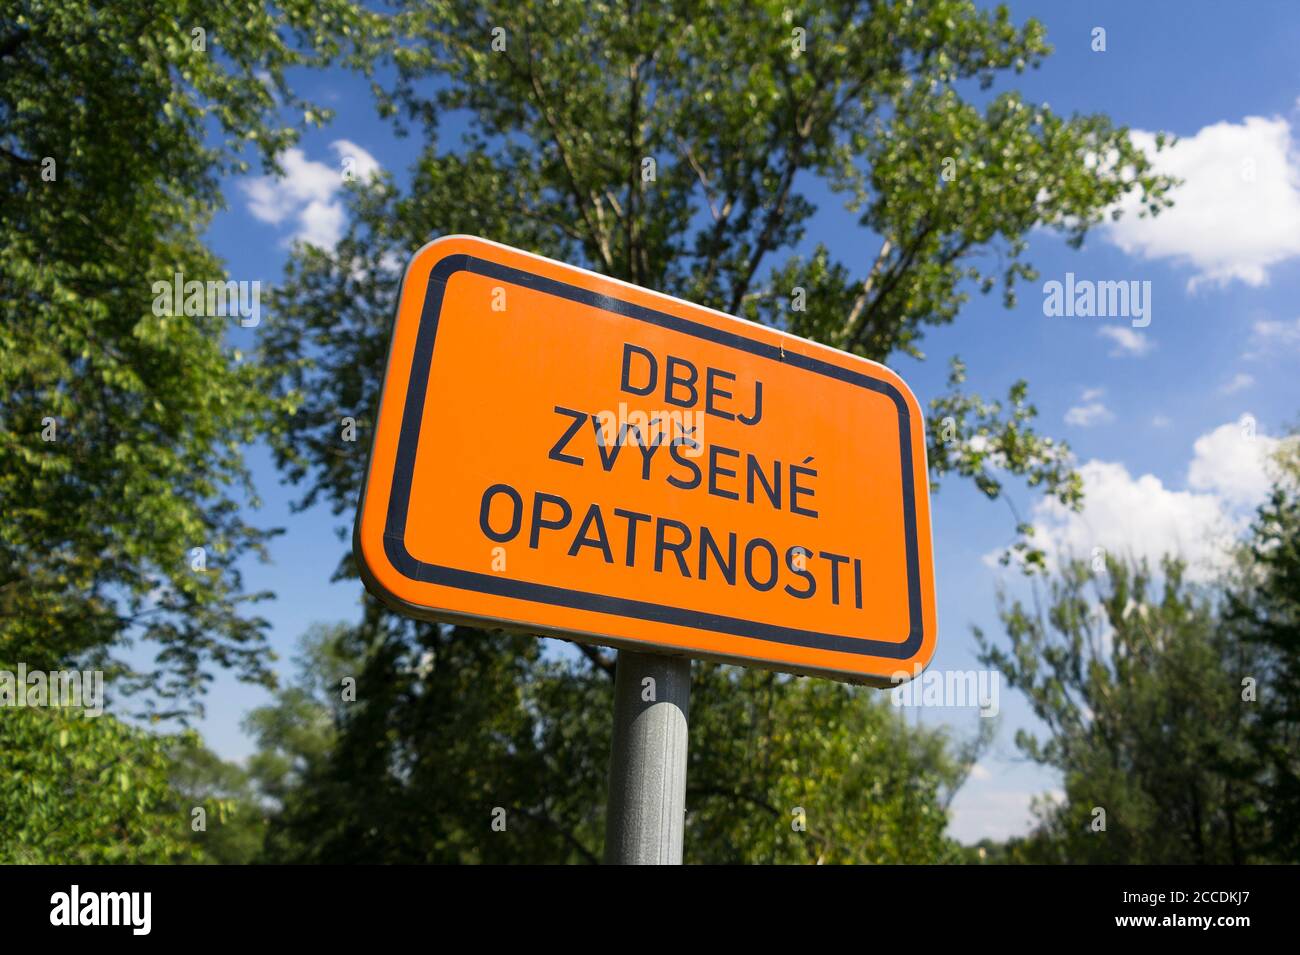 Dbej zvysene opatrnosti ( soyez plus prudent ) - texte tchèque sur le panneau orange. Faire appel à la prudence, à la vigilance et à la variation. Banque D'Images